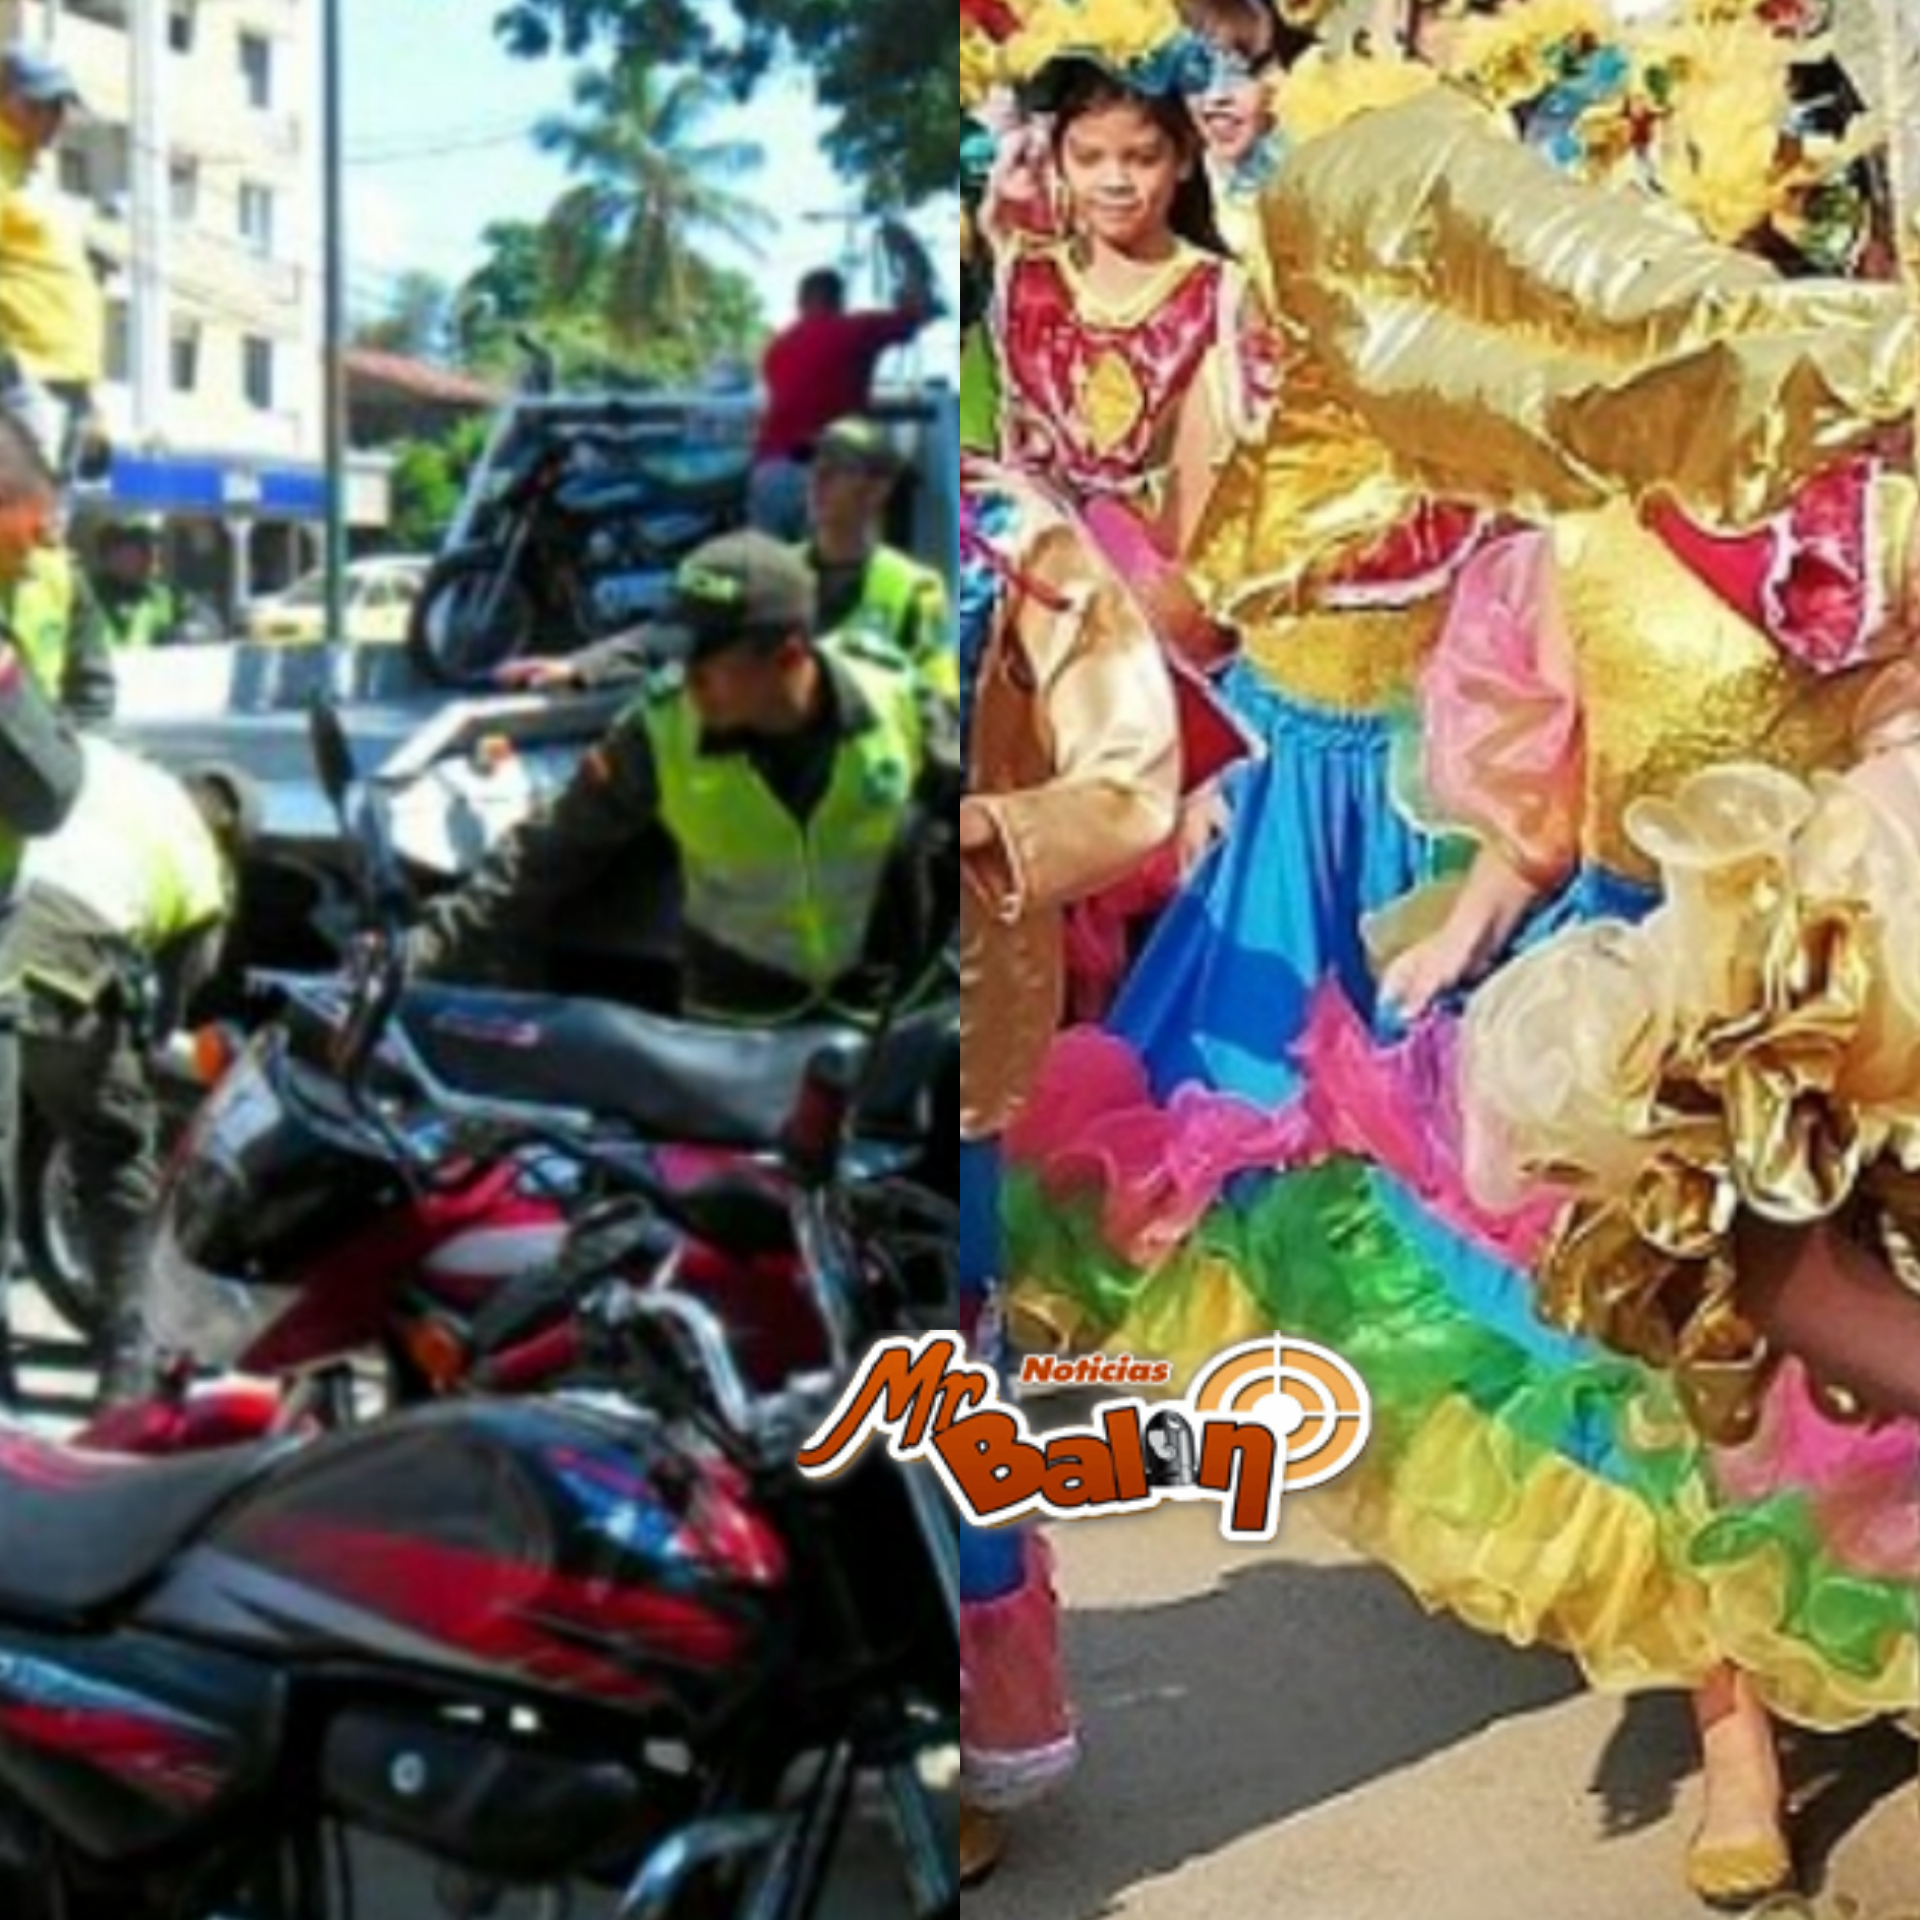 Prohibido circular motos los días 26 y 27 en el horario de estos carnavales...